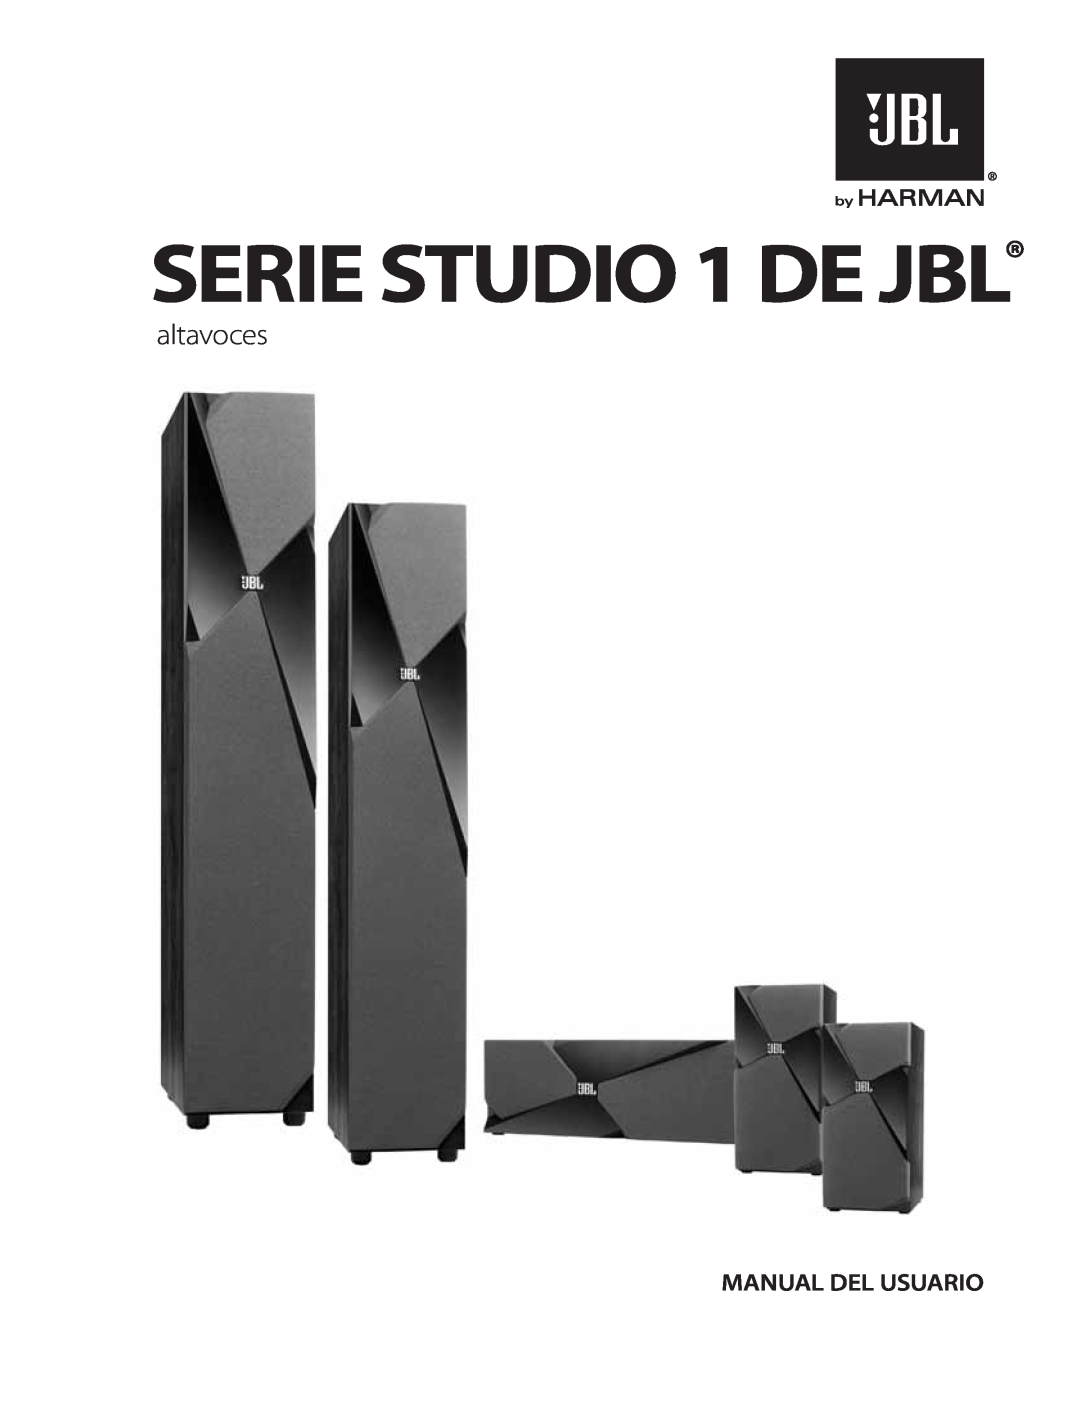 JBL STUDIO180 manual altavoces, SERIE STUDIO 1 DE JBL, Manual Del Usuario 